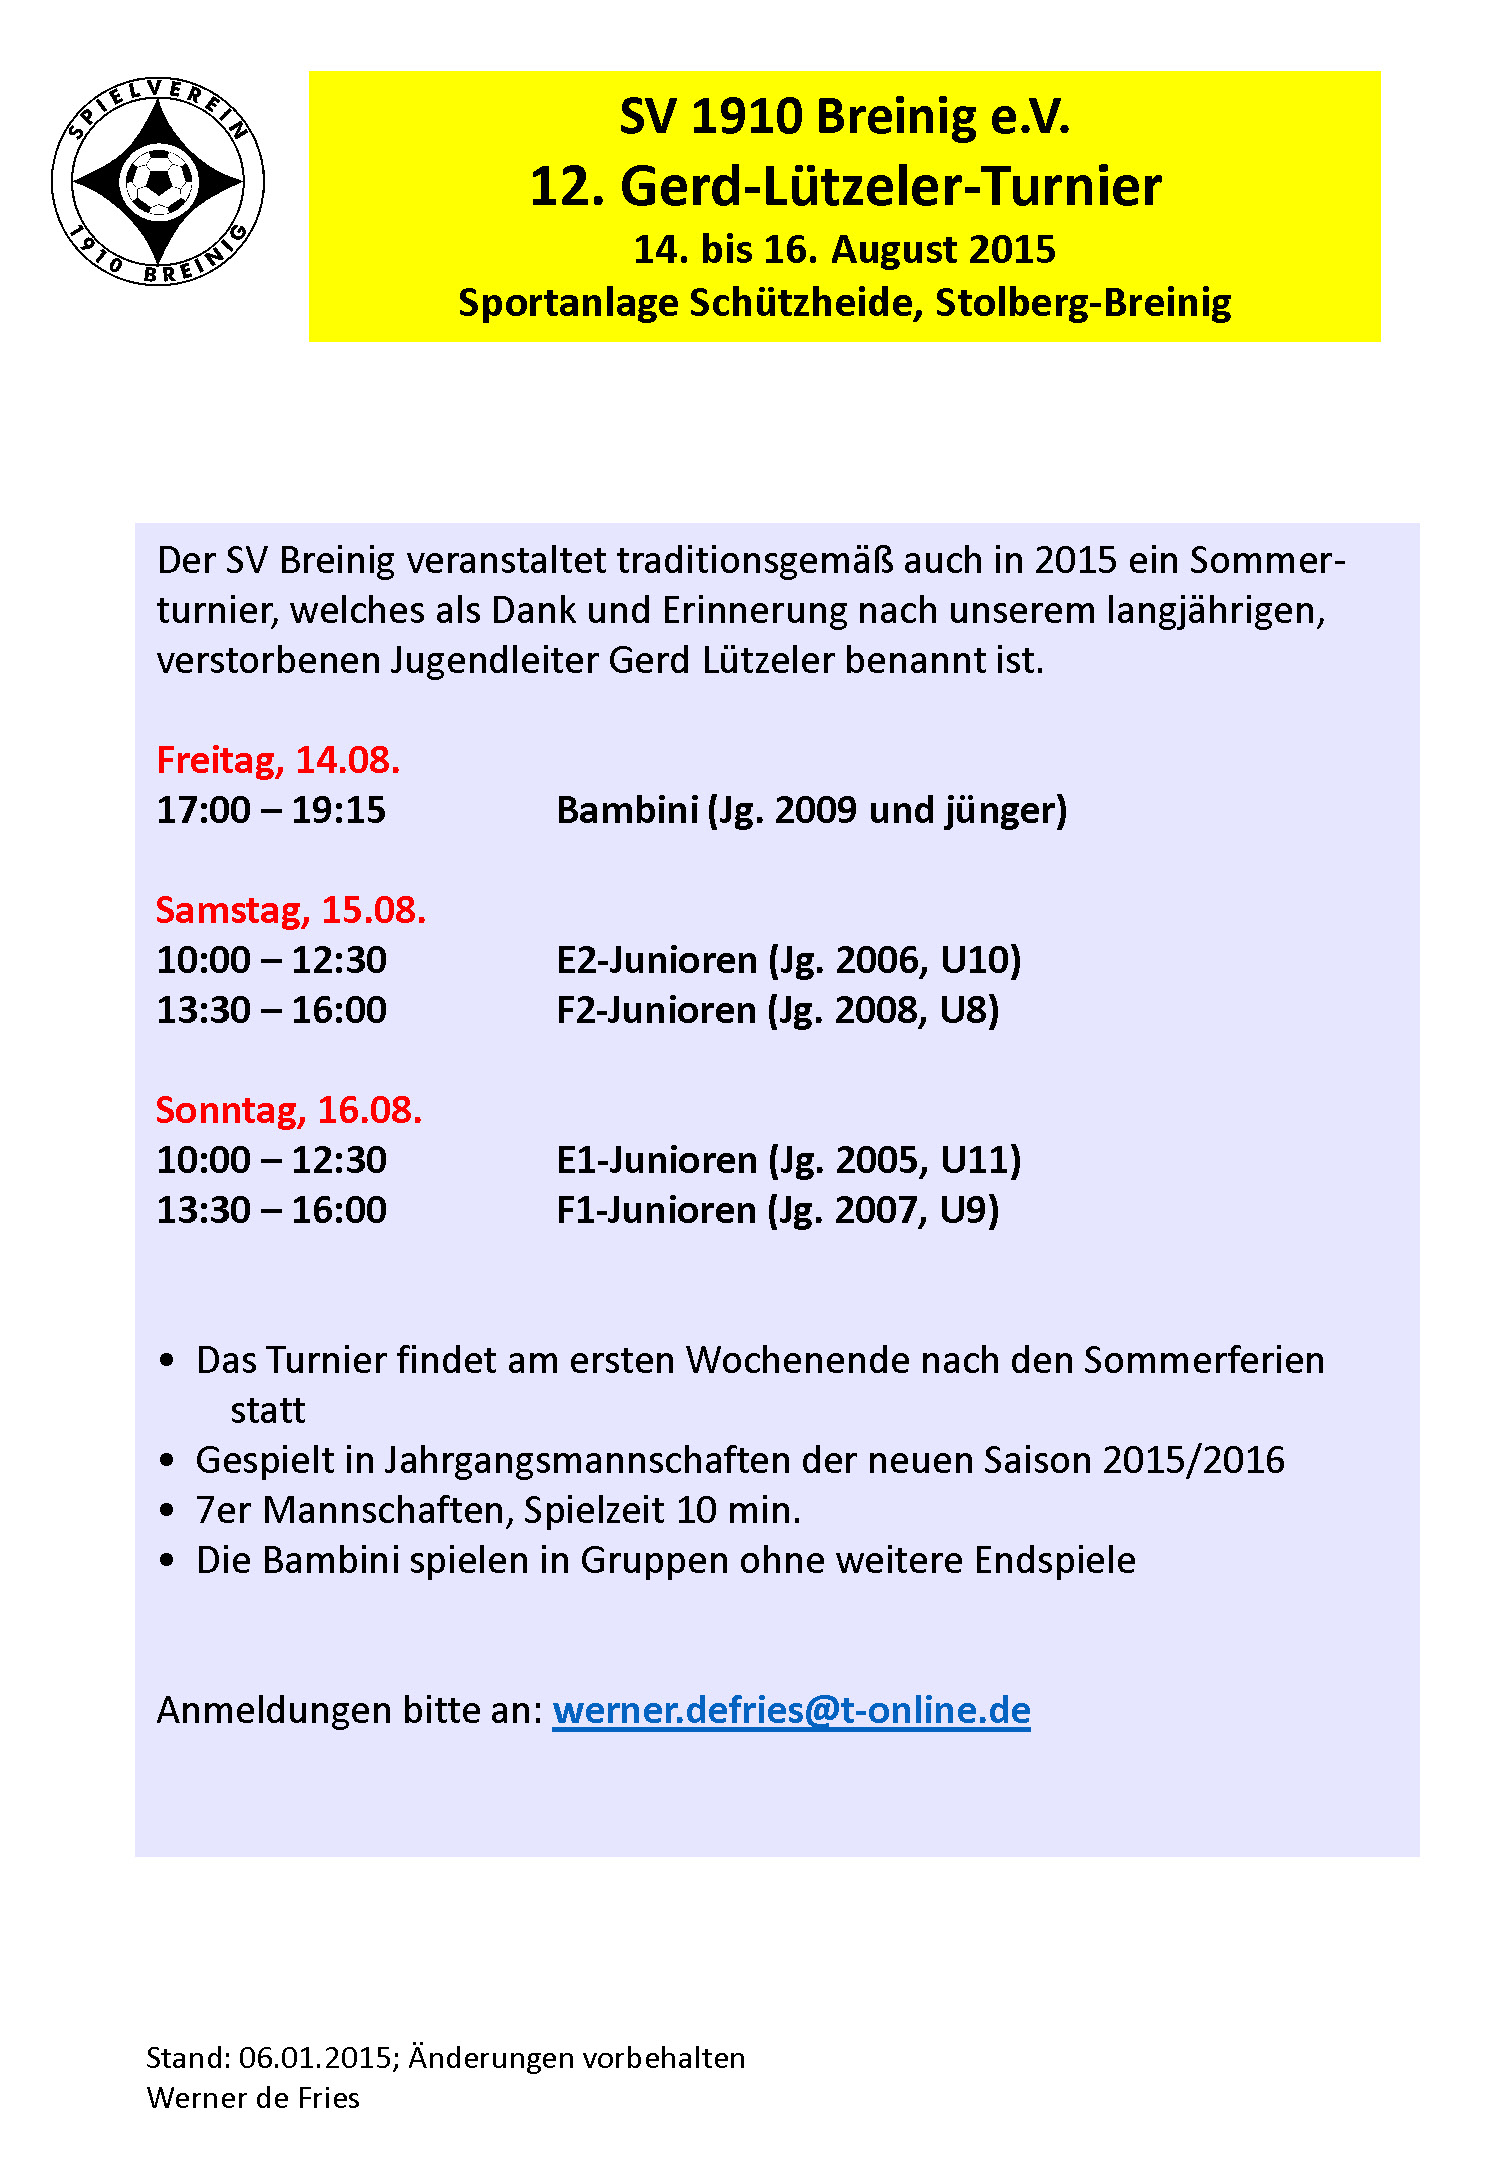 Einladung zum Gerd-Lützeler-Turnier des SV Breinig 2015